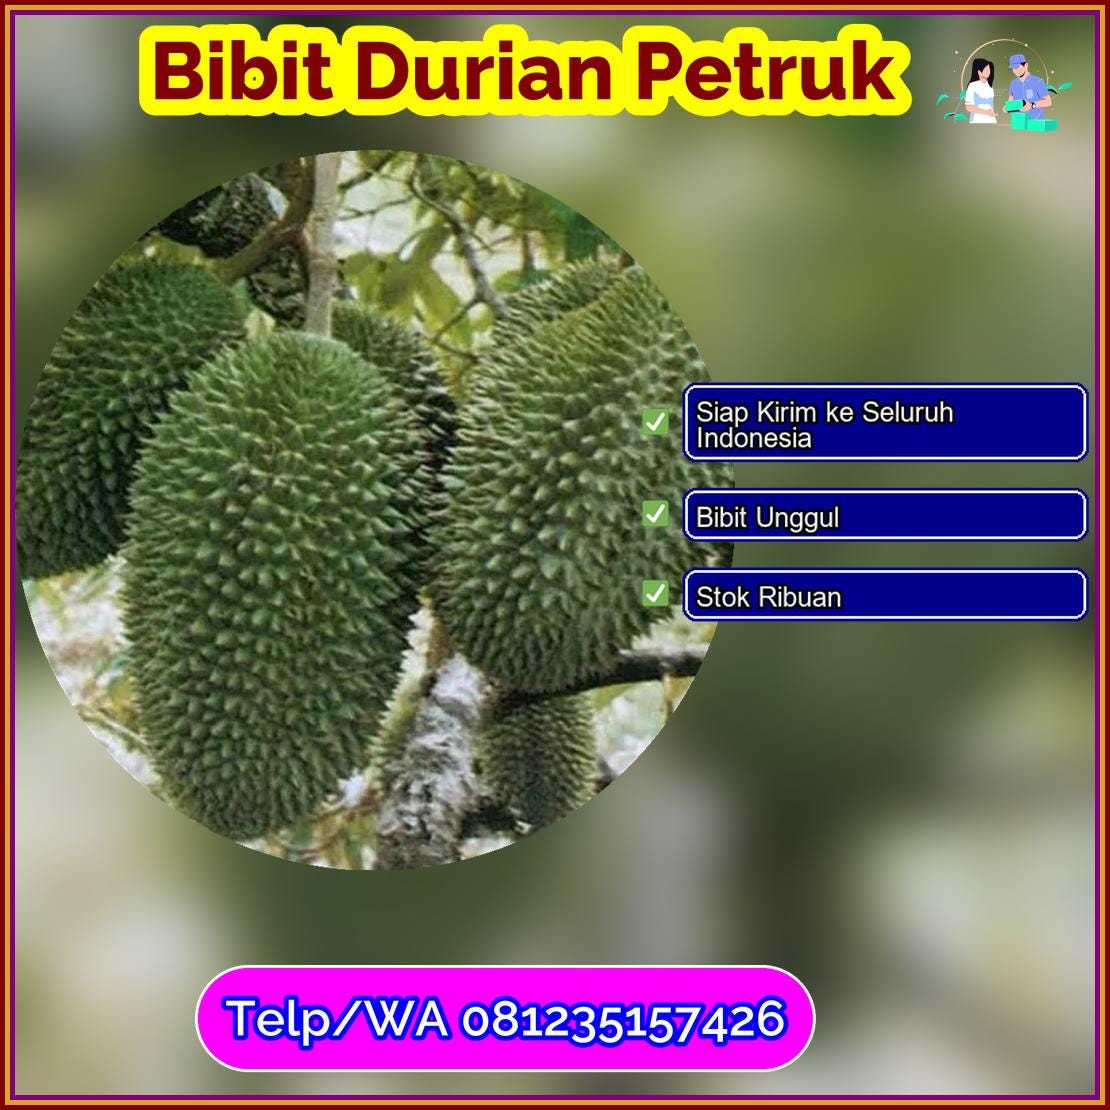 Jual Bibit Durian Petruk Kota Lubuk Linggau